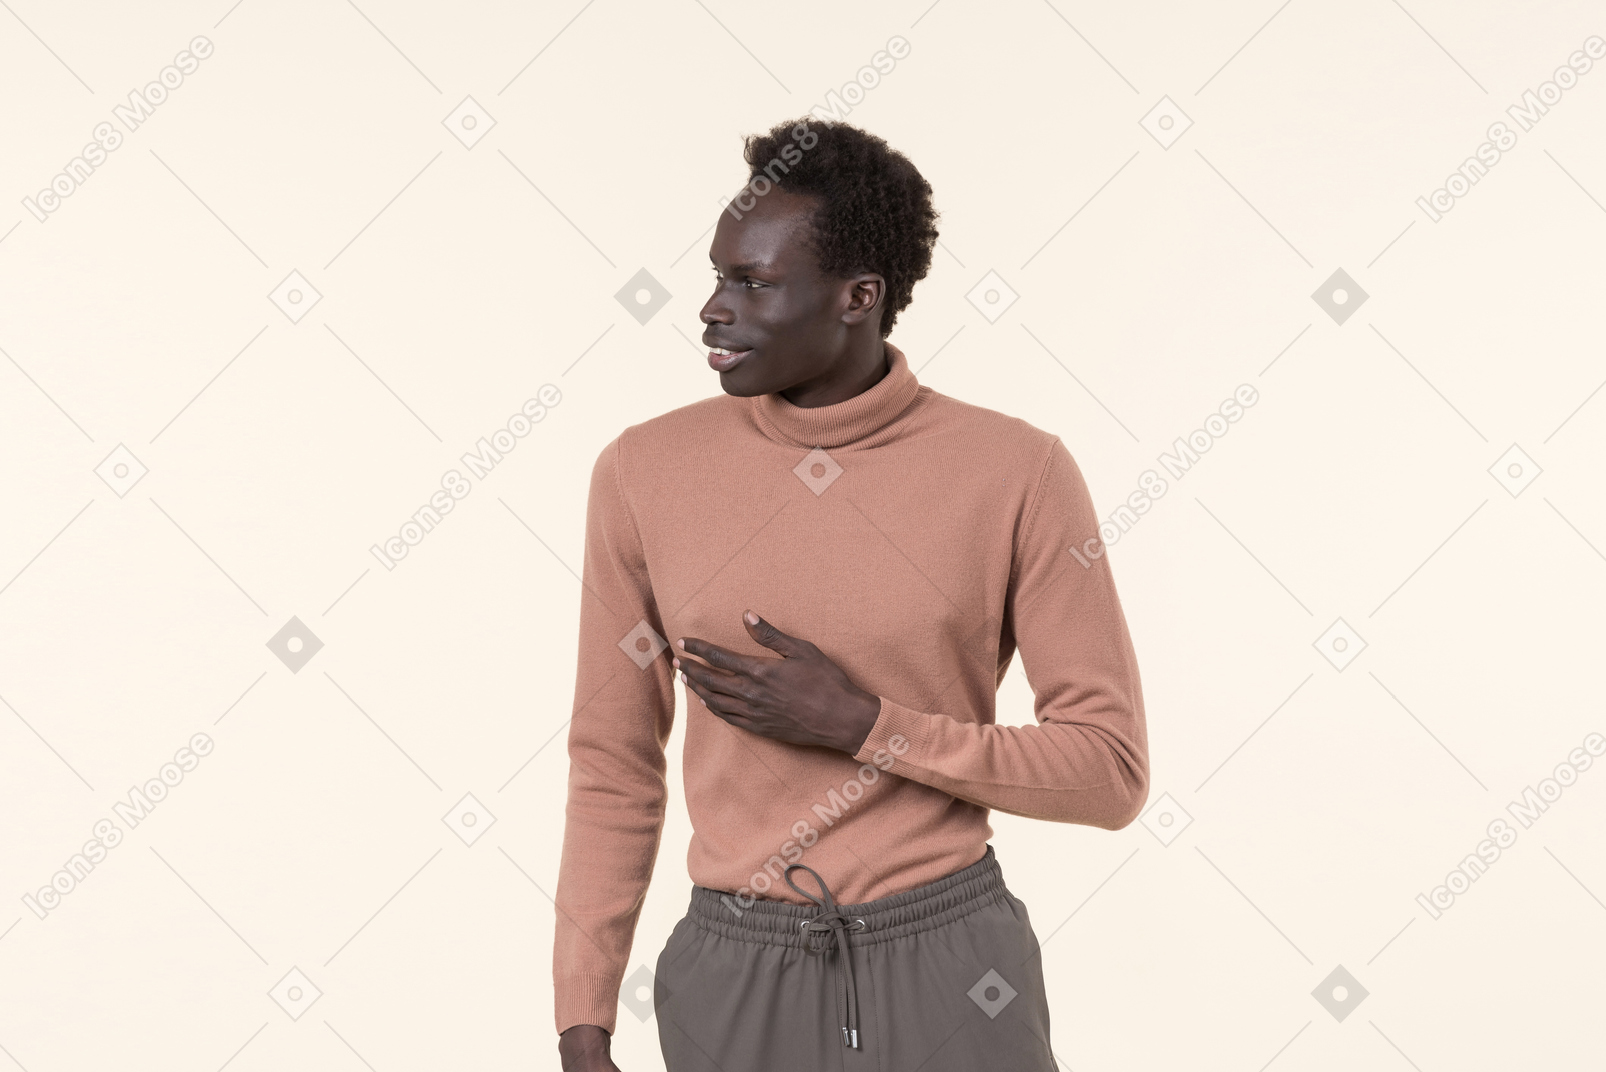 米色高领毛衣和灰色运动裤的一个年轻黑人偶然地站立在白色背景